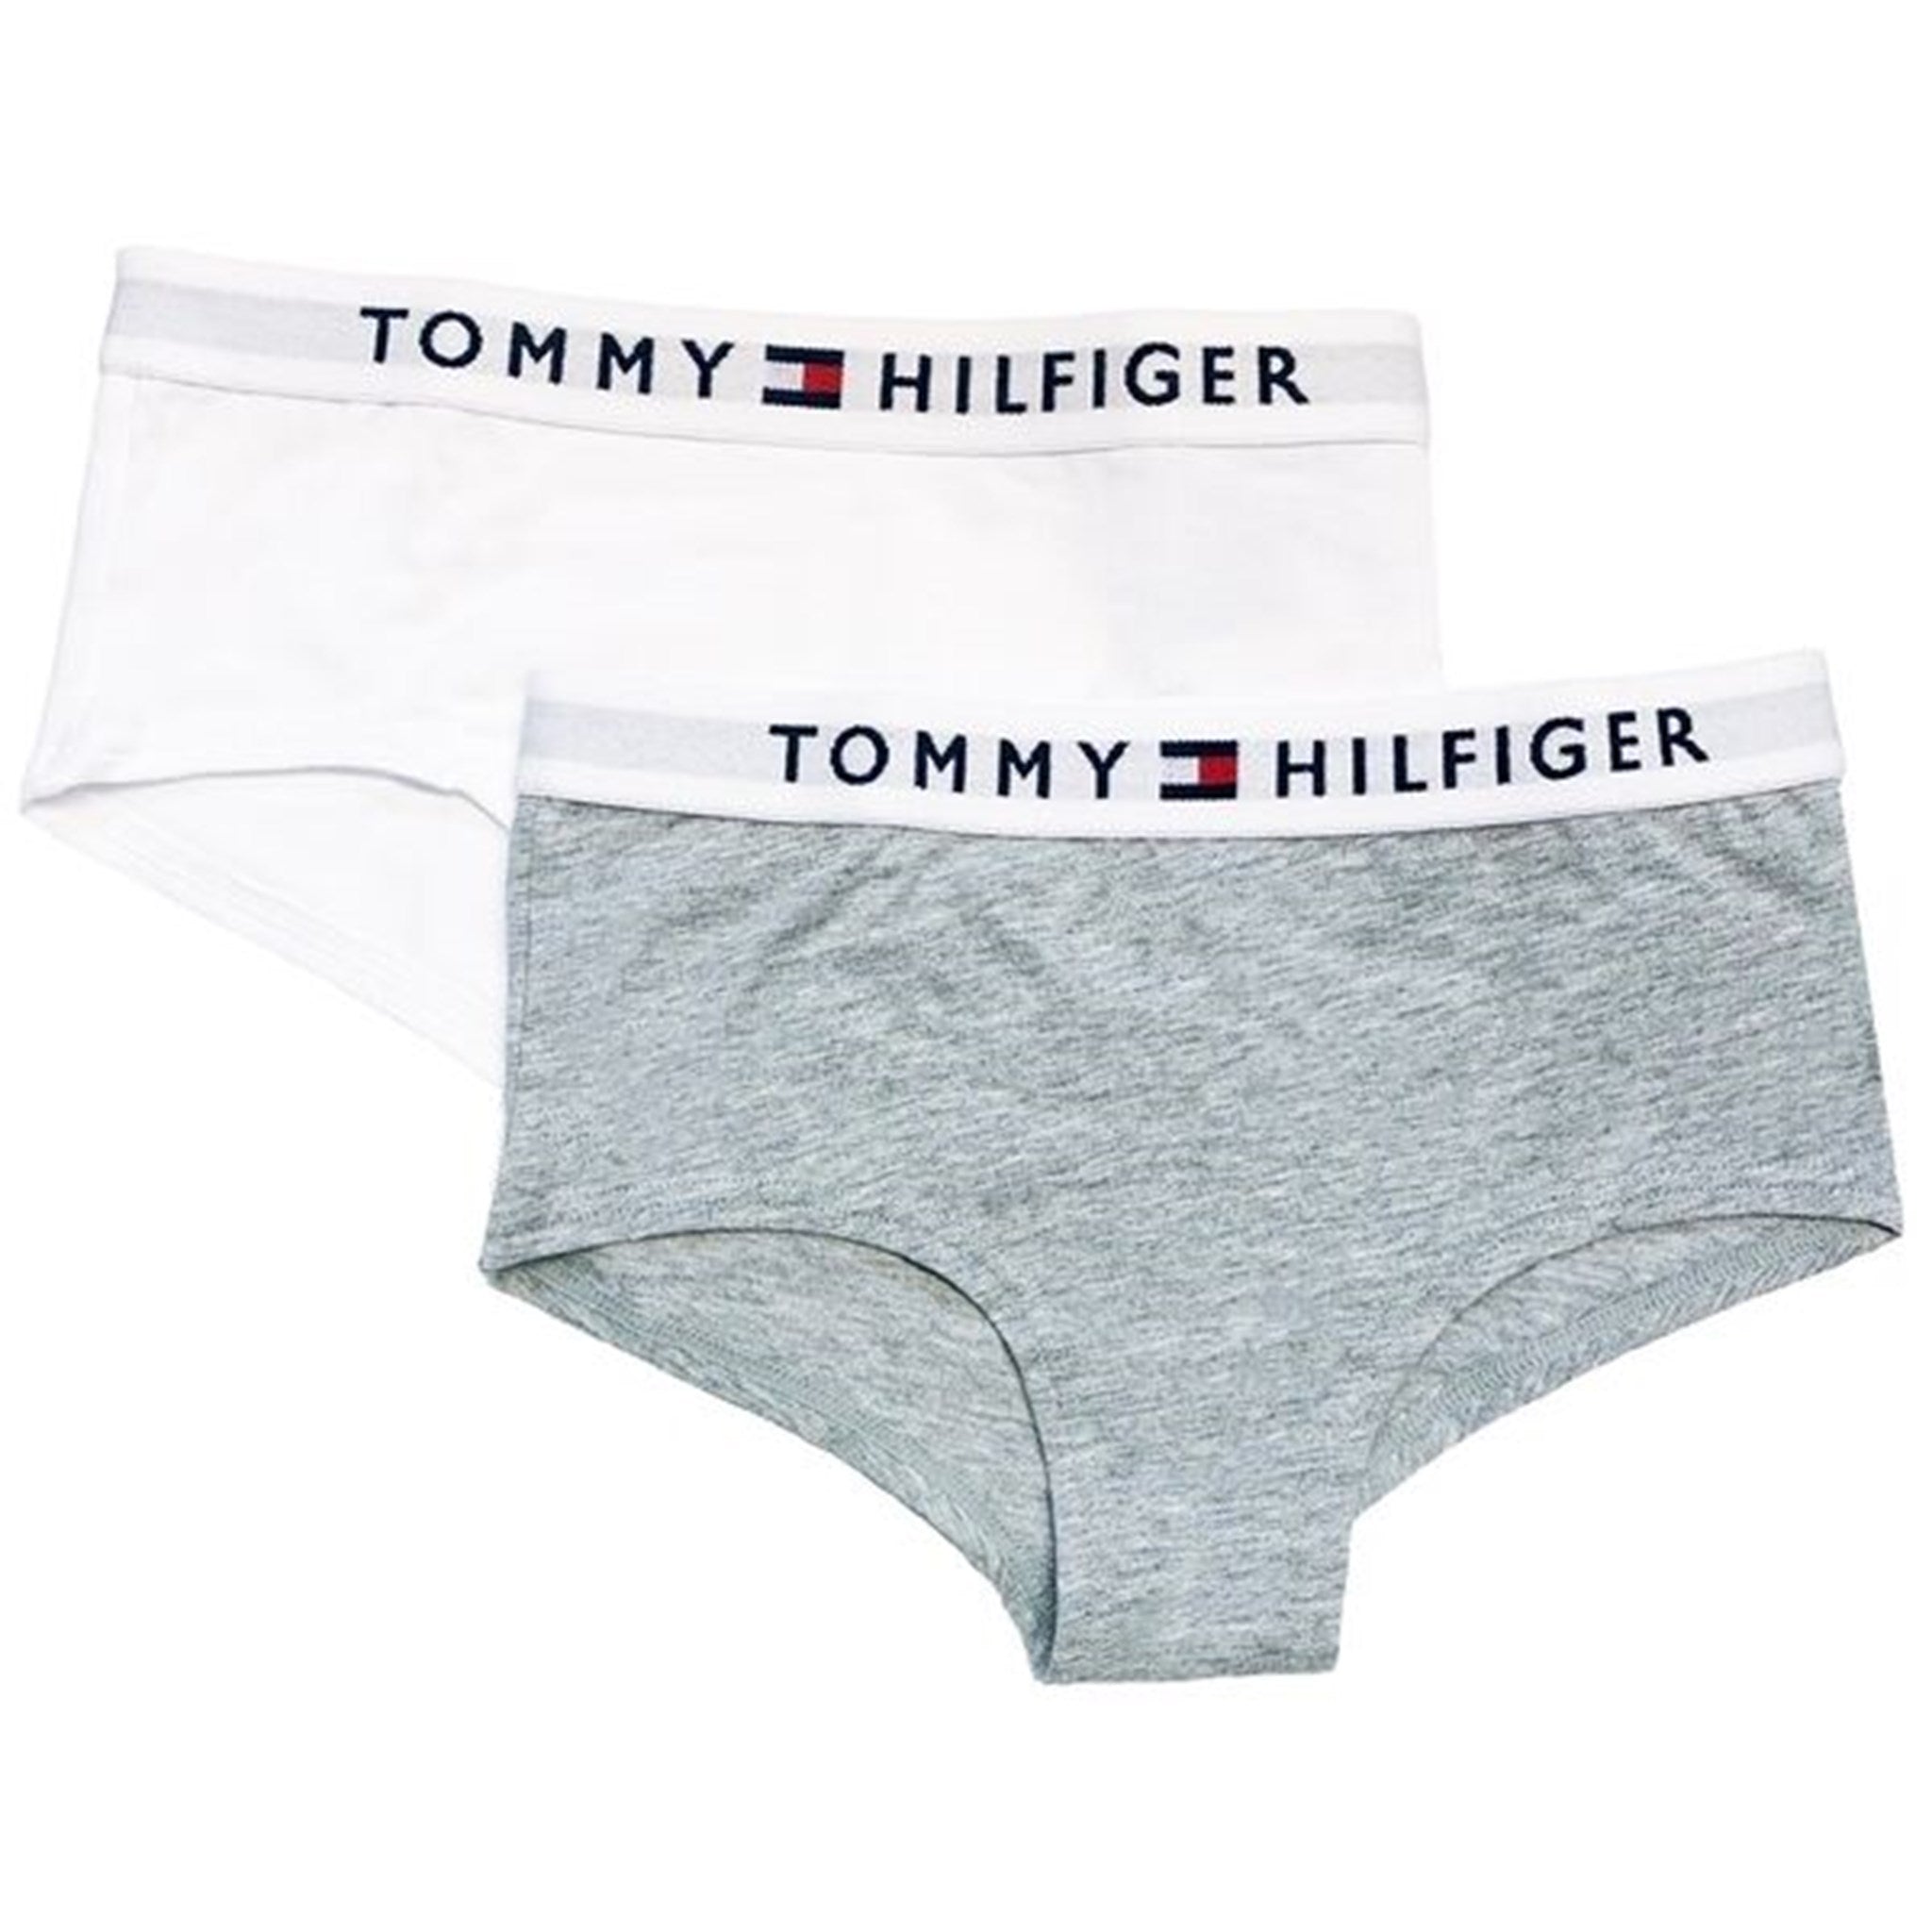 Tommy Hilfiger Shorty 2-pak Medium Grey Heather/White